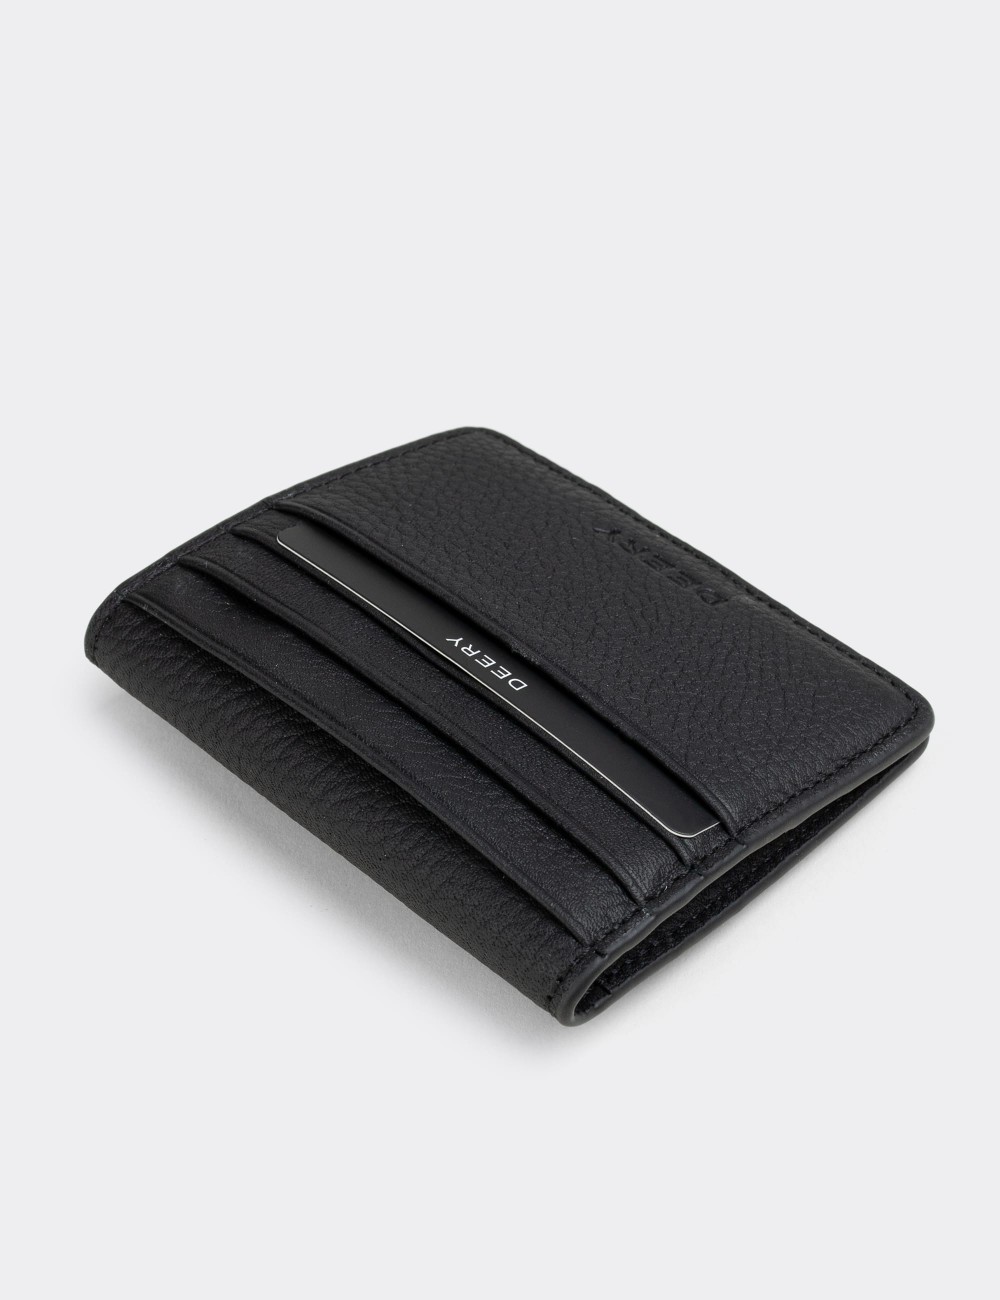  Leather Black Men's Wallet - 00512MSYHZ01